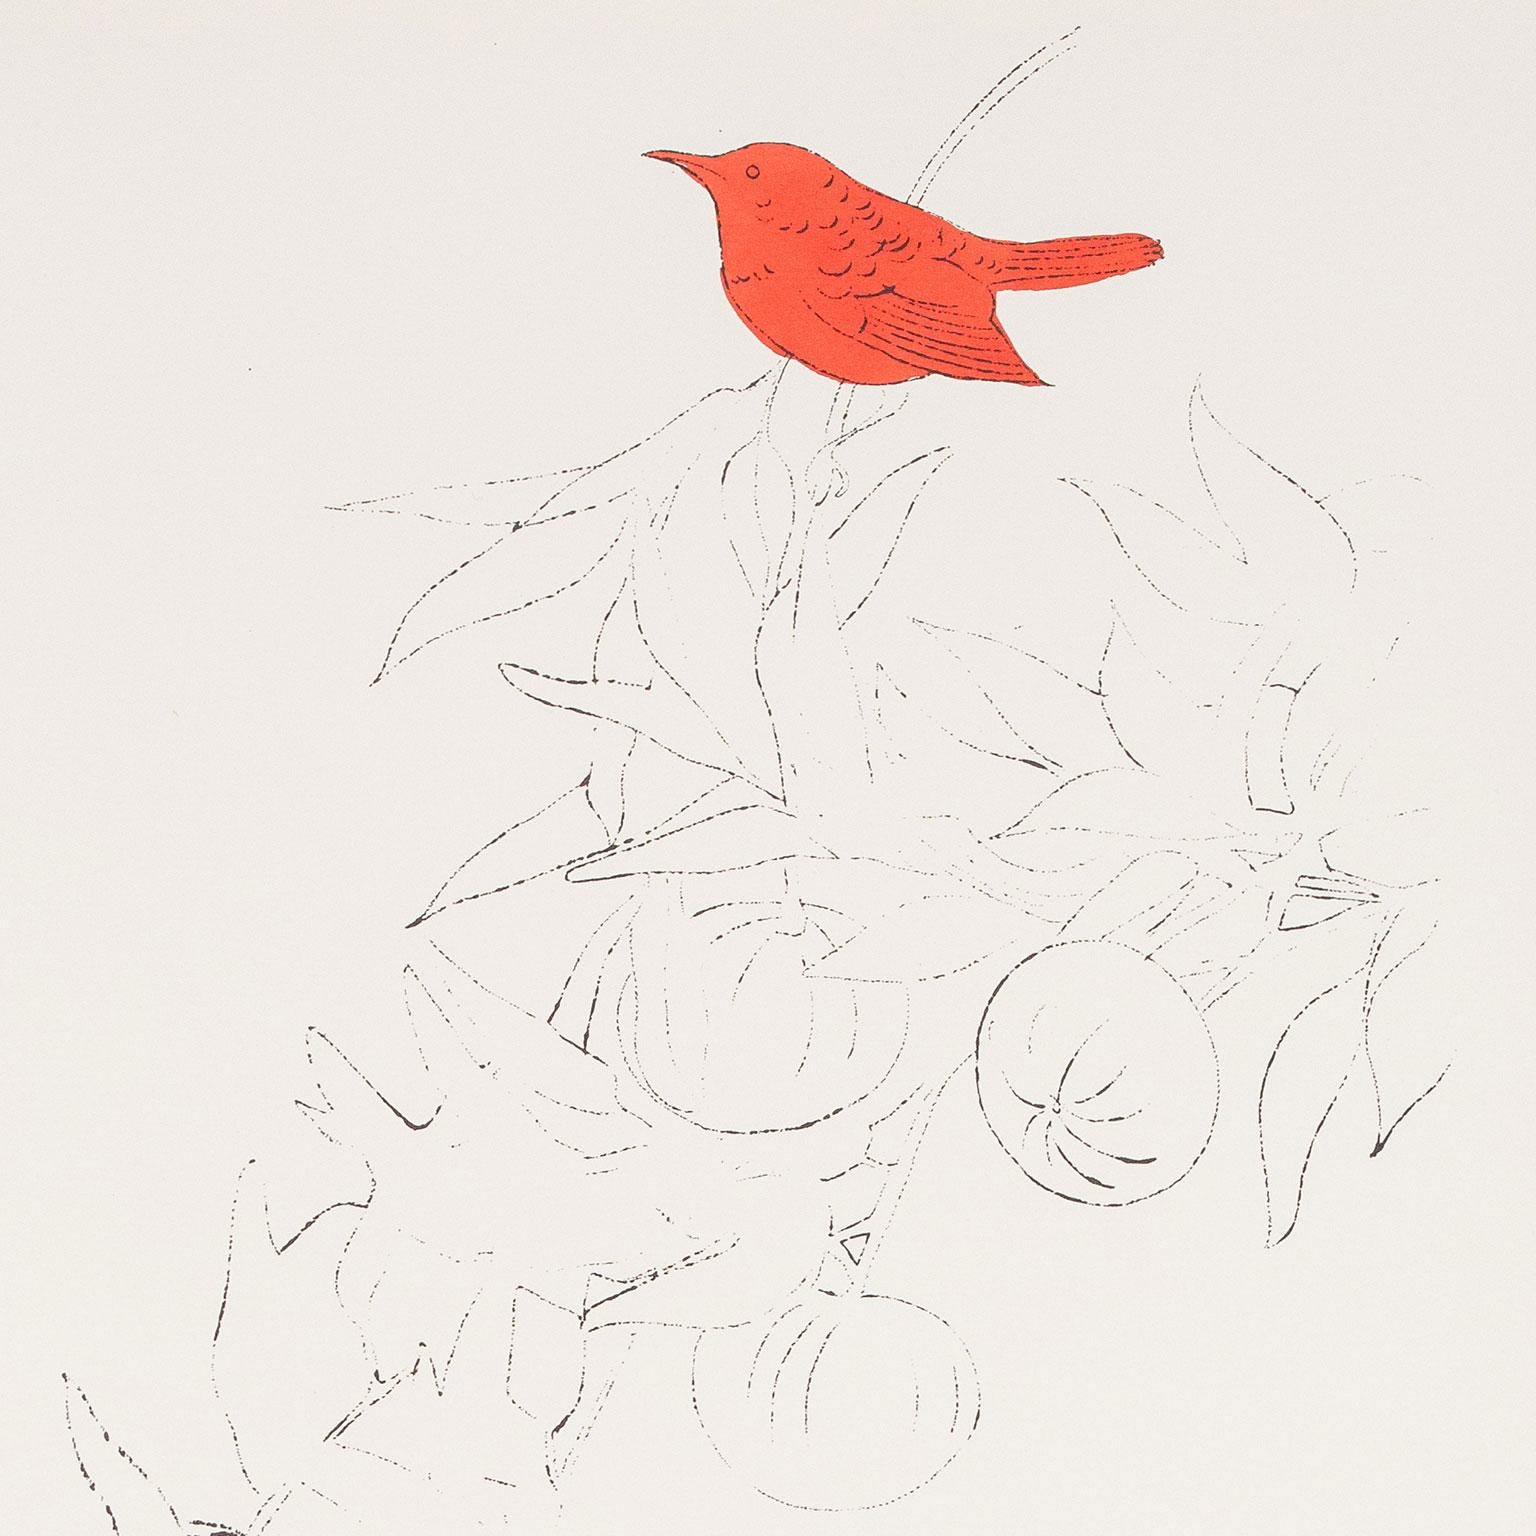 Oiseau sur une branche de fruits, lithographie offset colorée à la main à l'aquarelle 1